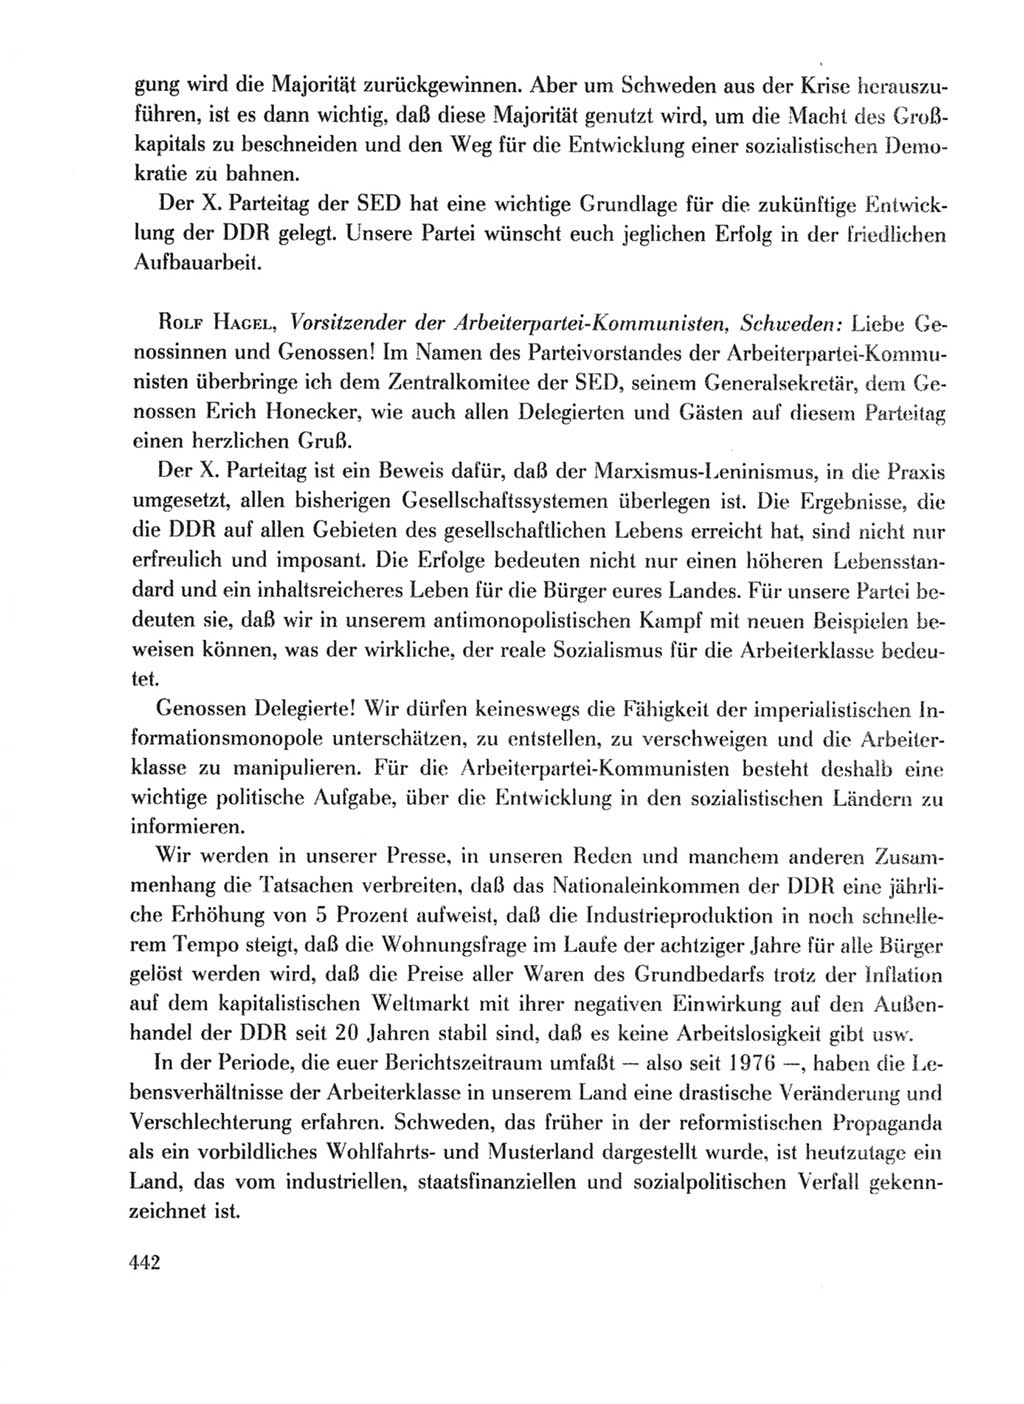 Protokoll der Verhandlungen des Ⅹ. Parteitages der Sozialistischen Einheitspartei Deutschlands (SED) [Deutsche Demokratische Republik (DDR)] 1981, Band 1, Seite 442 (Prot. Verh. Ⅹ. PT SED DDR 1981, Bd. 1, S. 442)